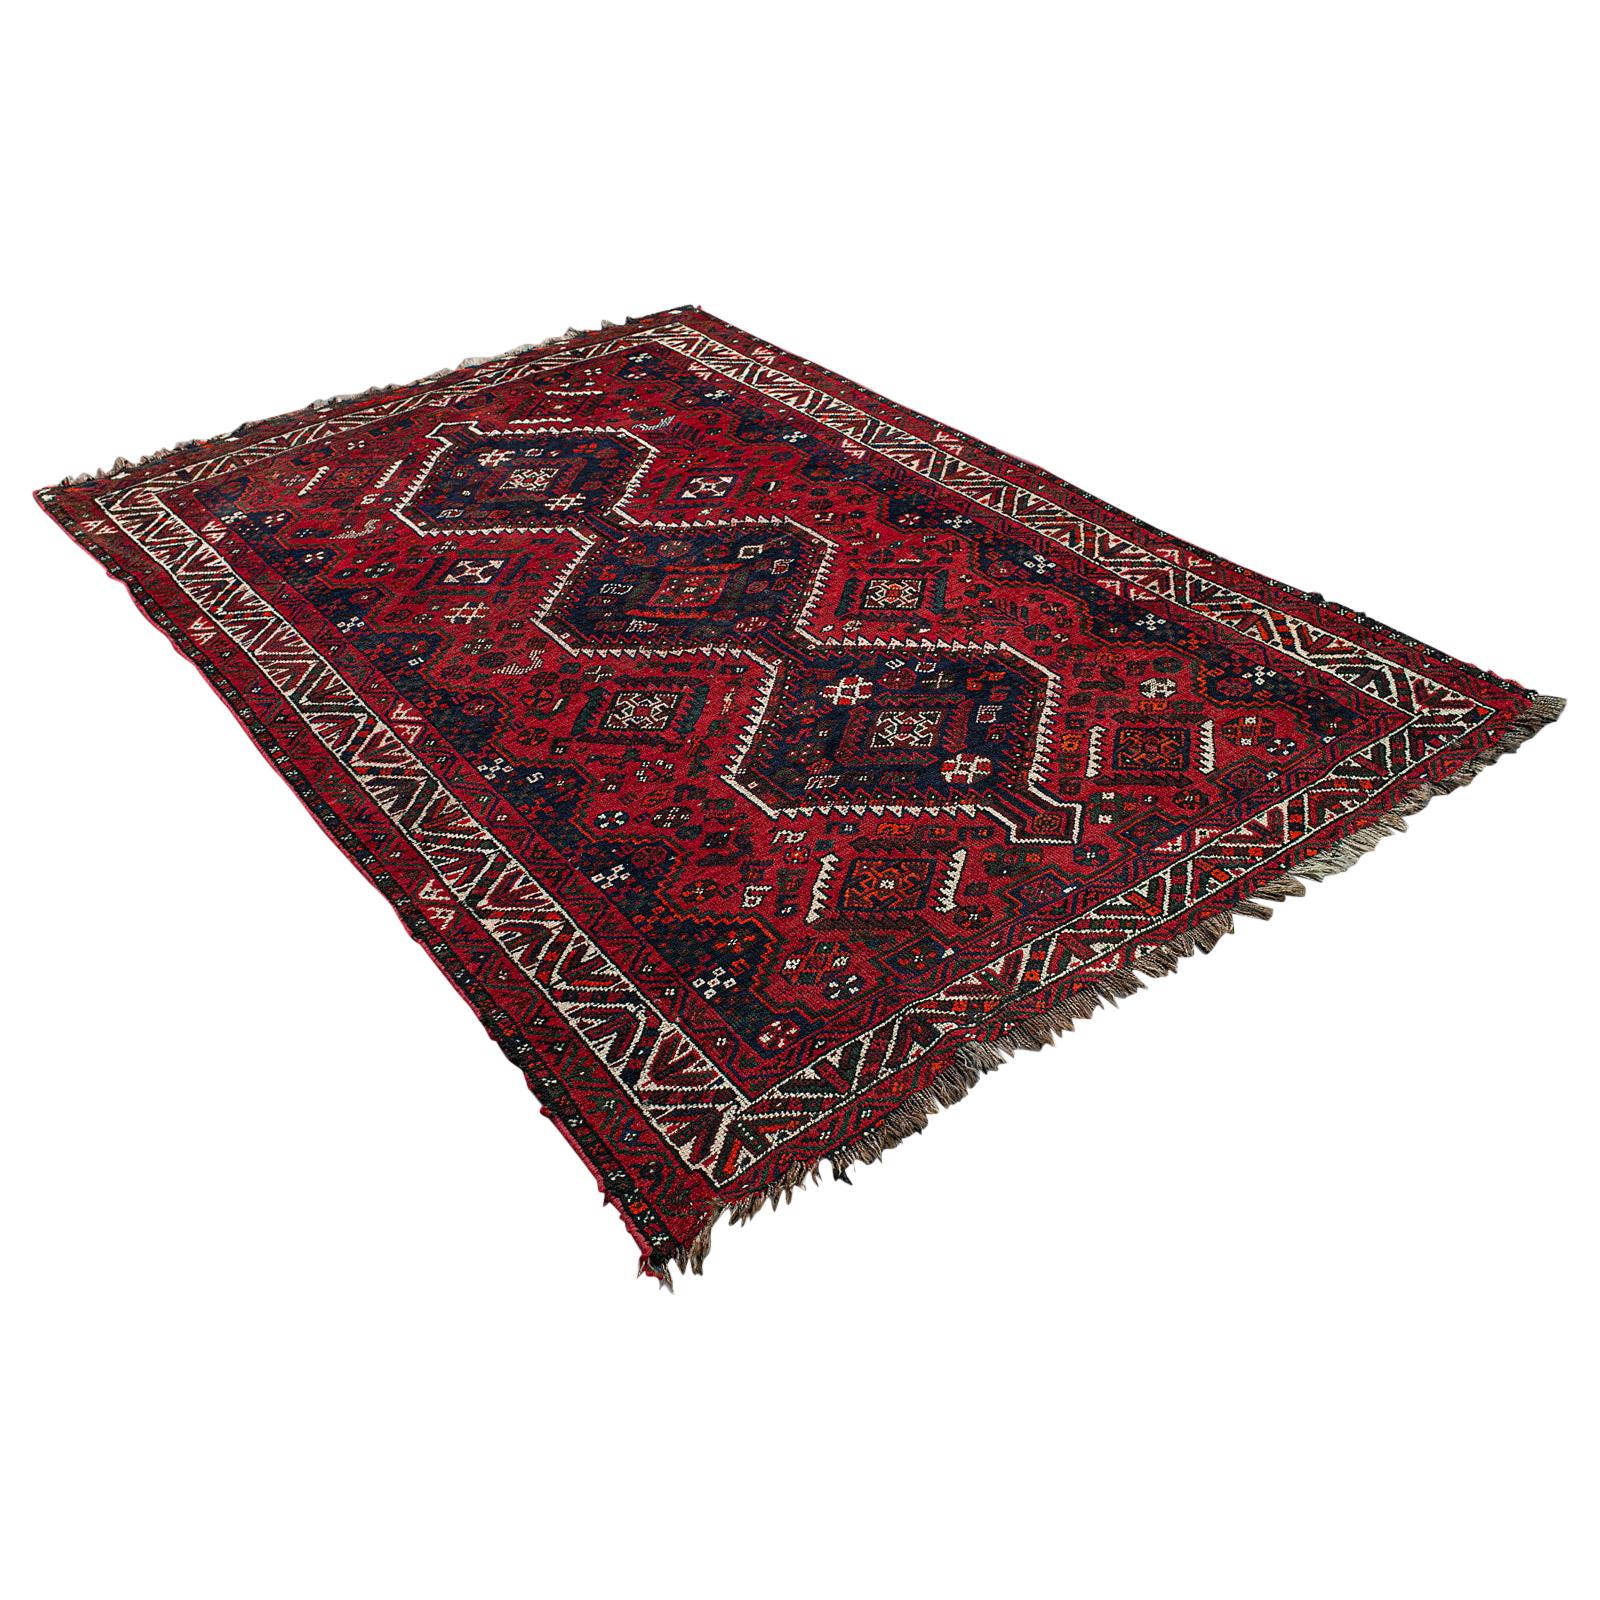 Antiker türkischer Teppich, kaukasischer, handgewebter Teppich, Lounge, Flur, Teppich, um 1900